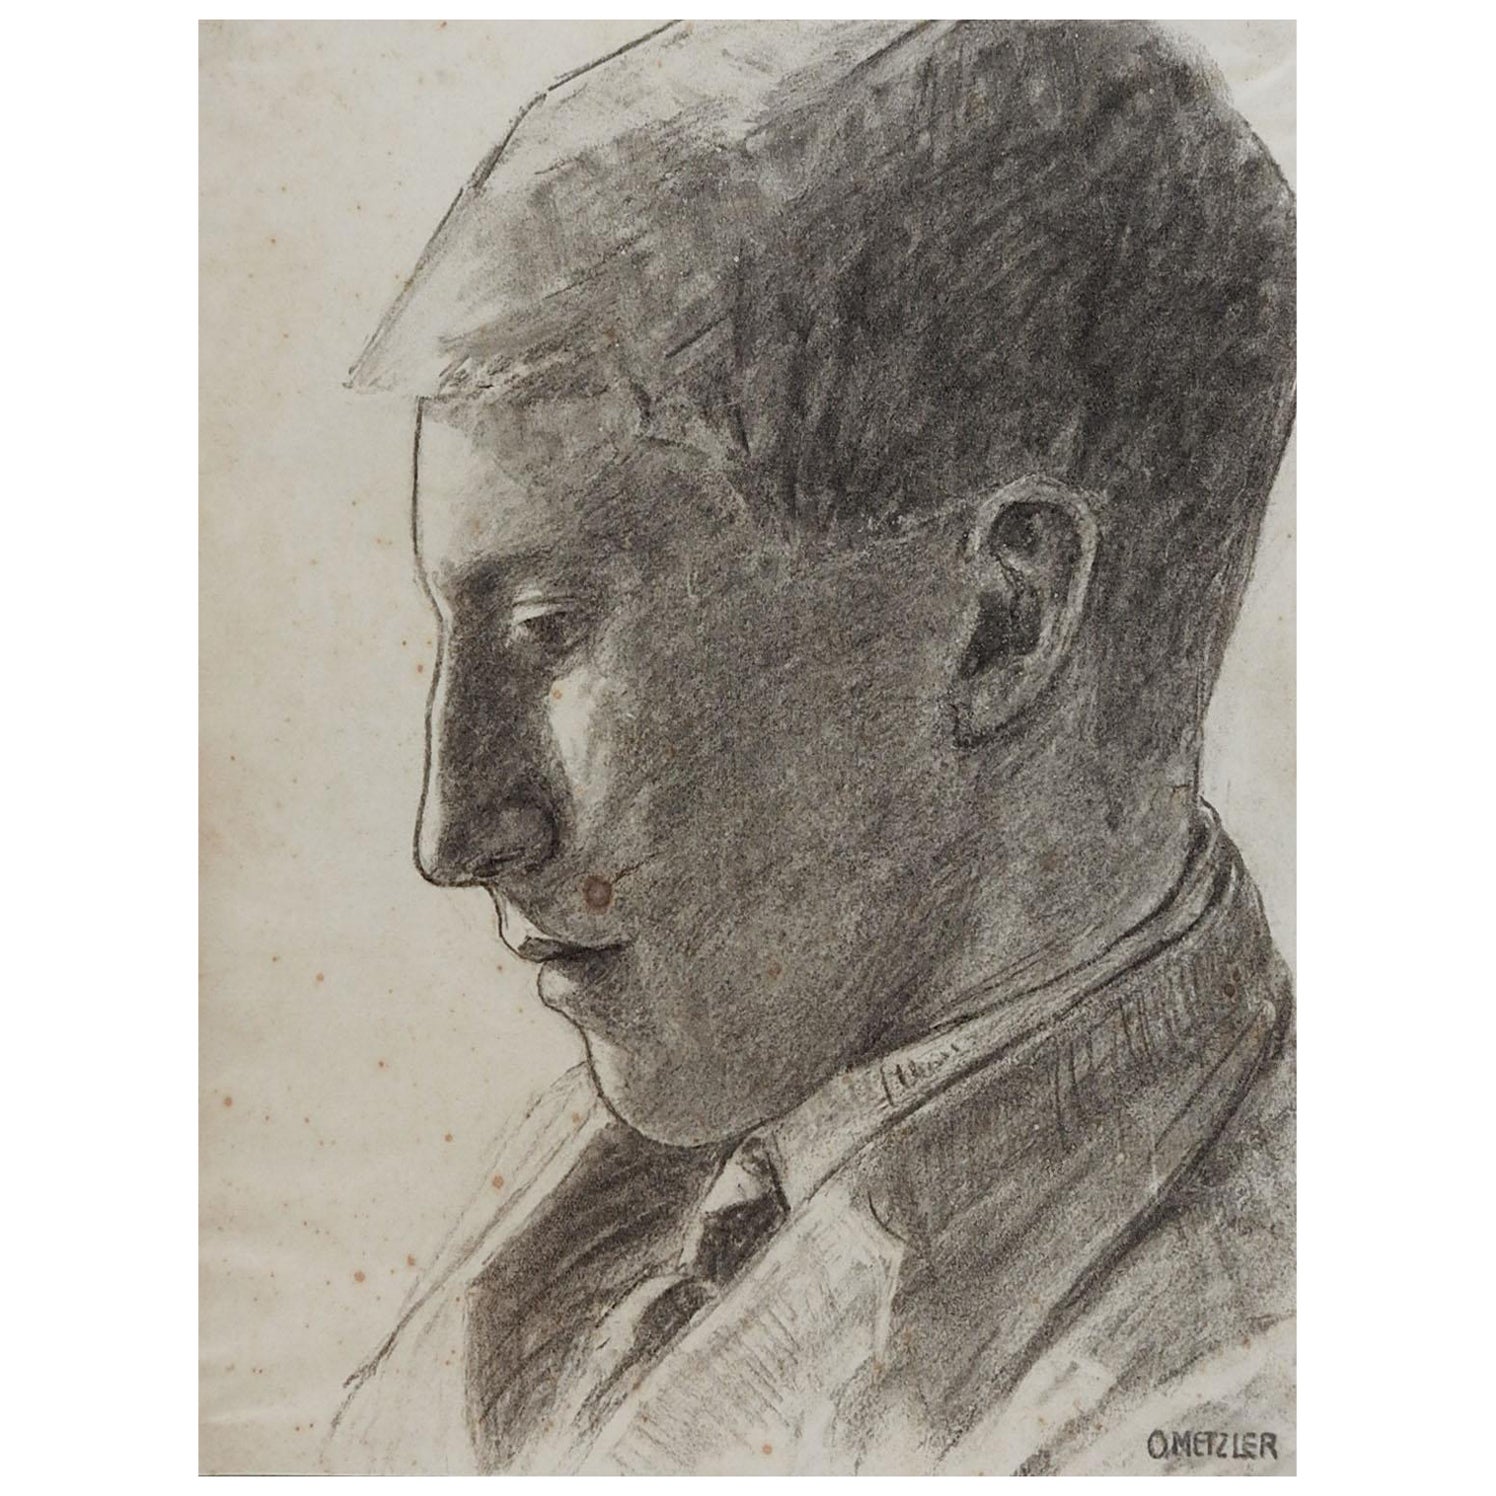 Porträtzeichnung eines jungen Mannes aus dem frühen 20. Jahrhundert